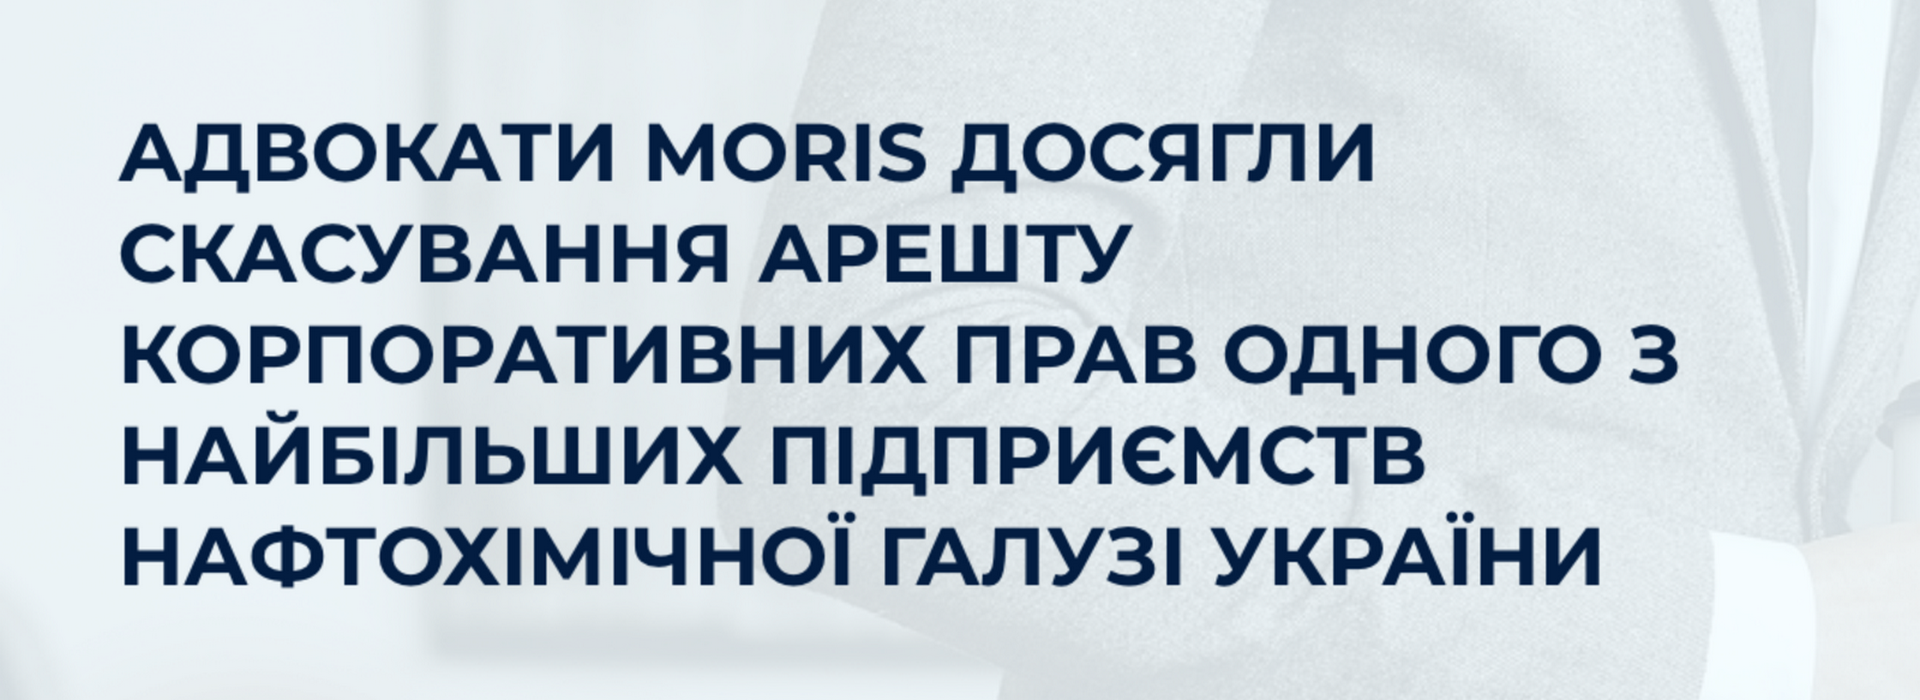 Суд підтримав позицію адвокатів MORIS та скасував арешт у кримінальному провадженні на частку в статутному капіталі одного з найбільших підприємств нафтохімічної галузі України в розмірі 2,3 млрд. грн